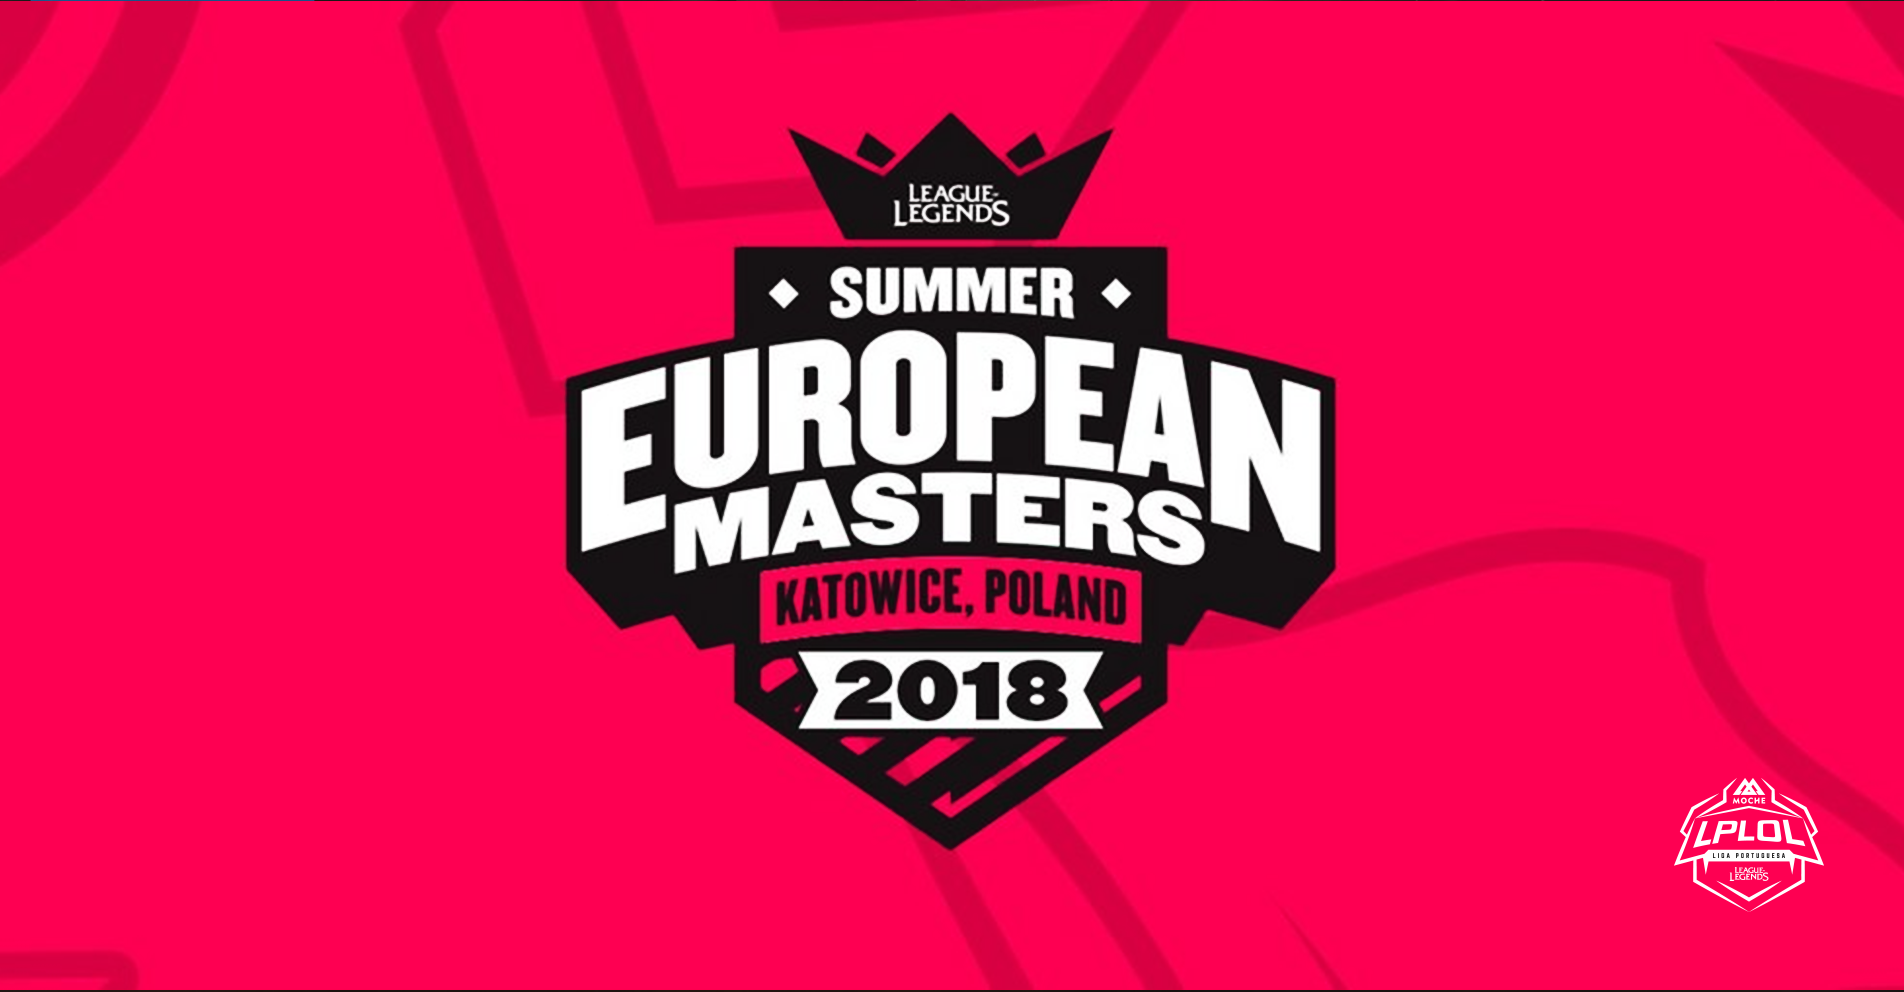 O European Masters regressa para a temporada de verão